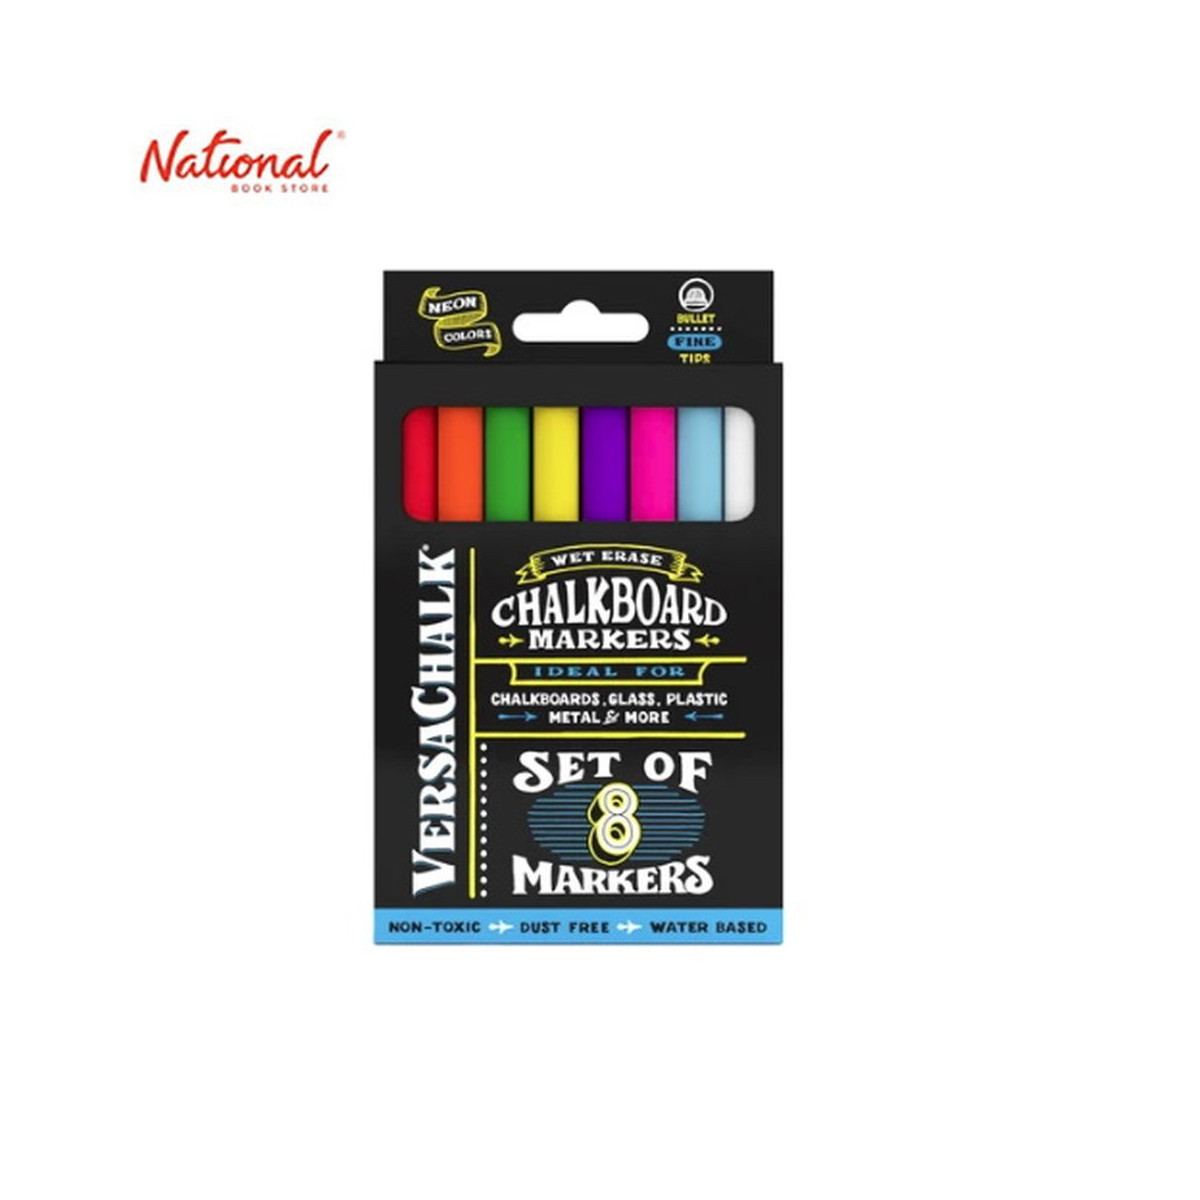 Versachalk Neon Liquid Chalk Markers Set of 8 (Fine)